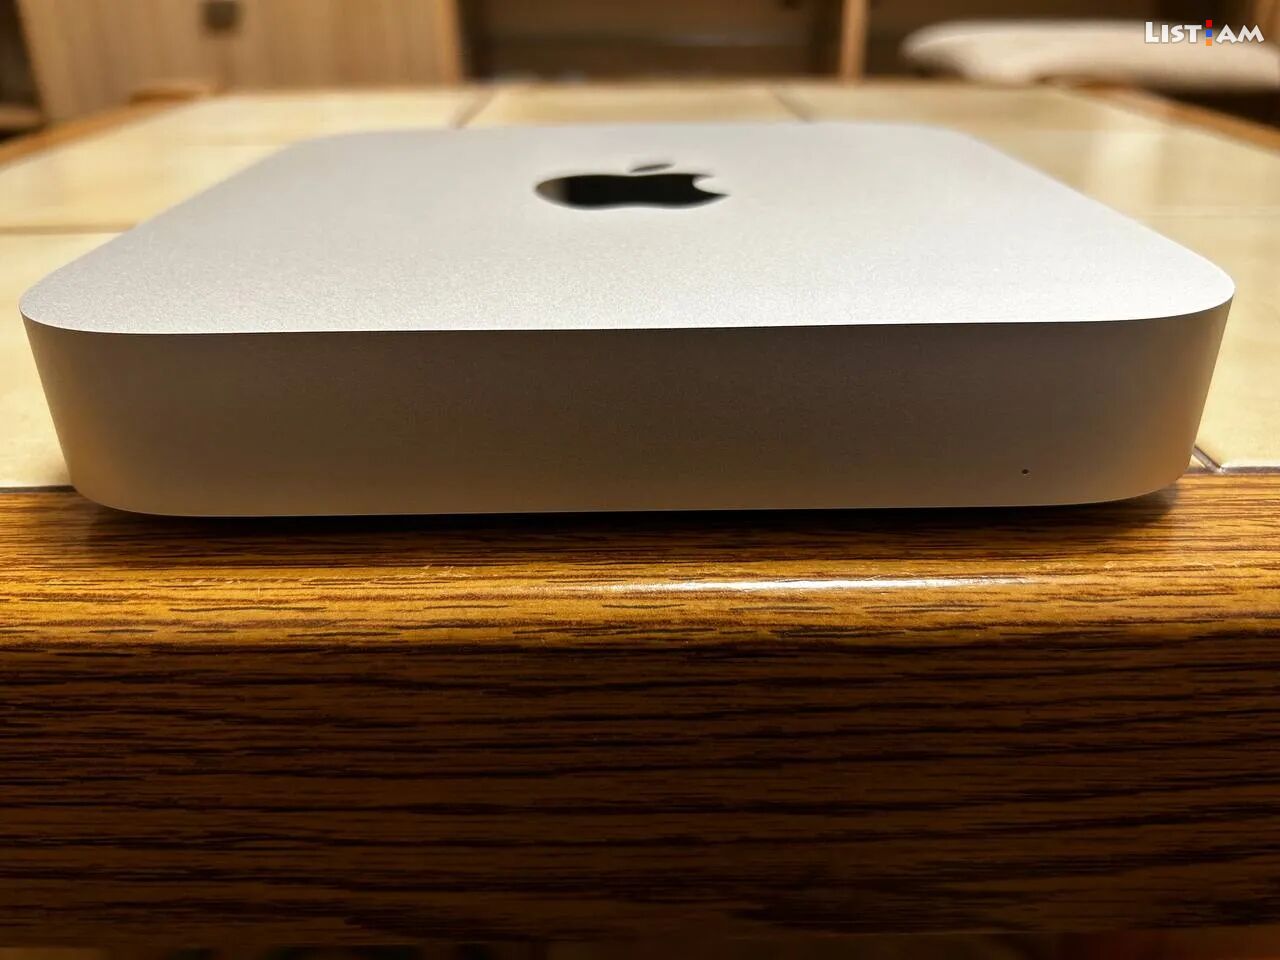 Apple Mac mini M1